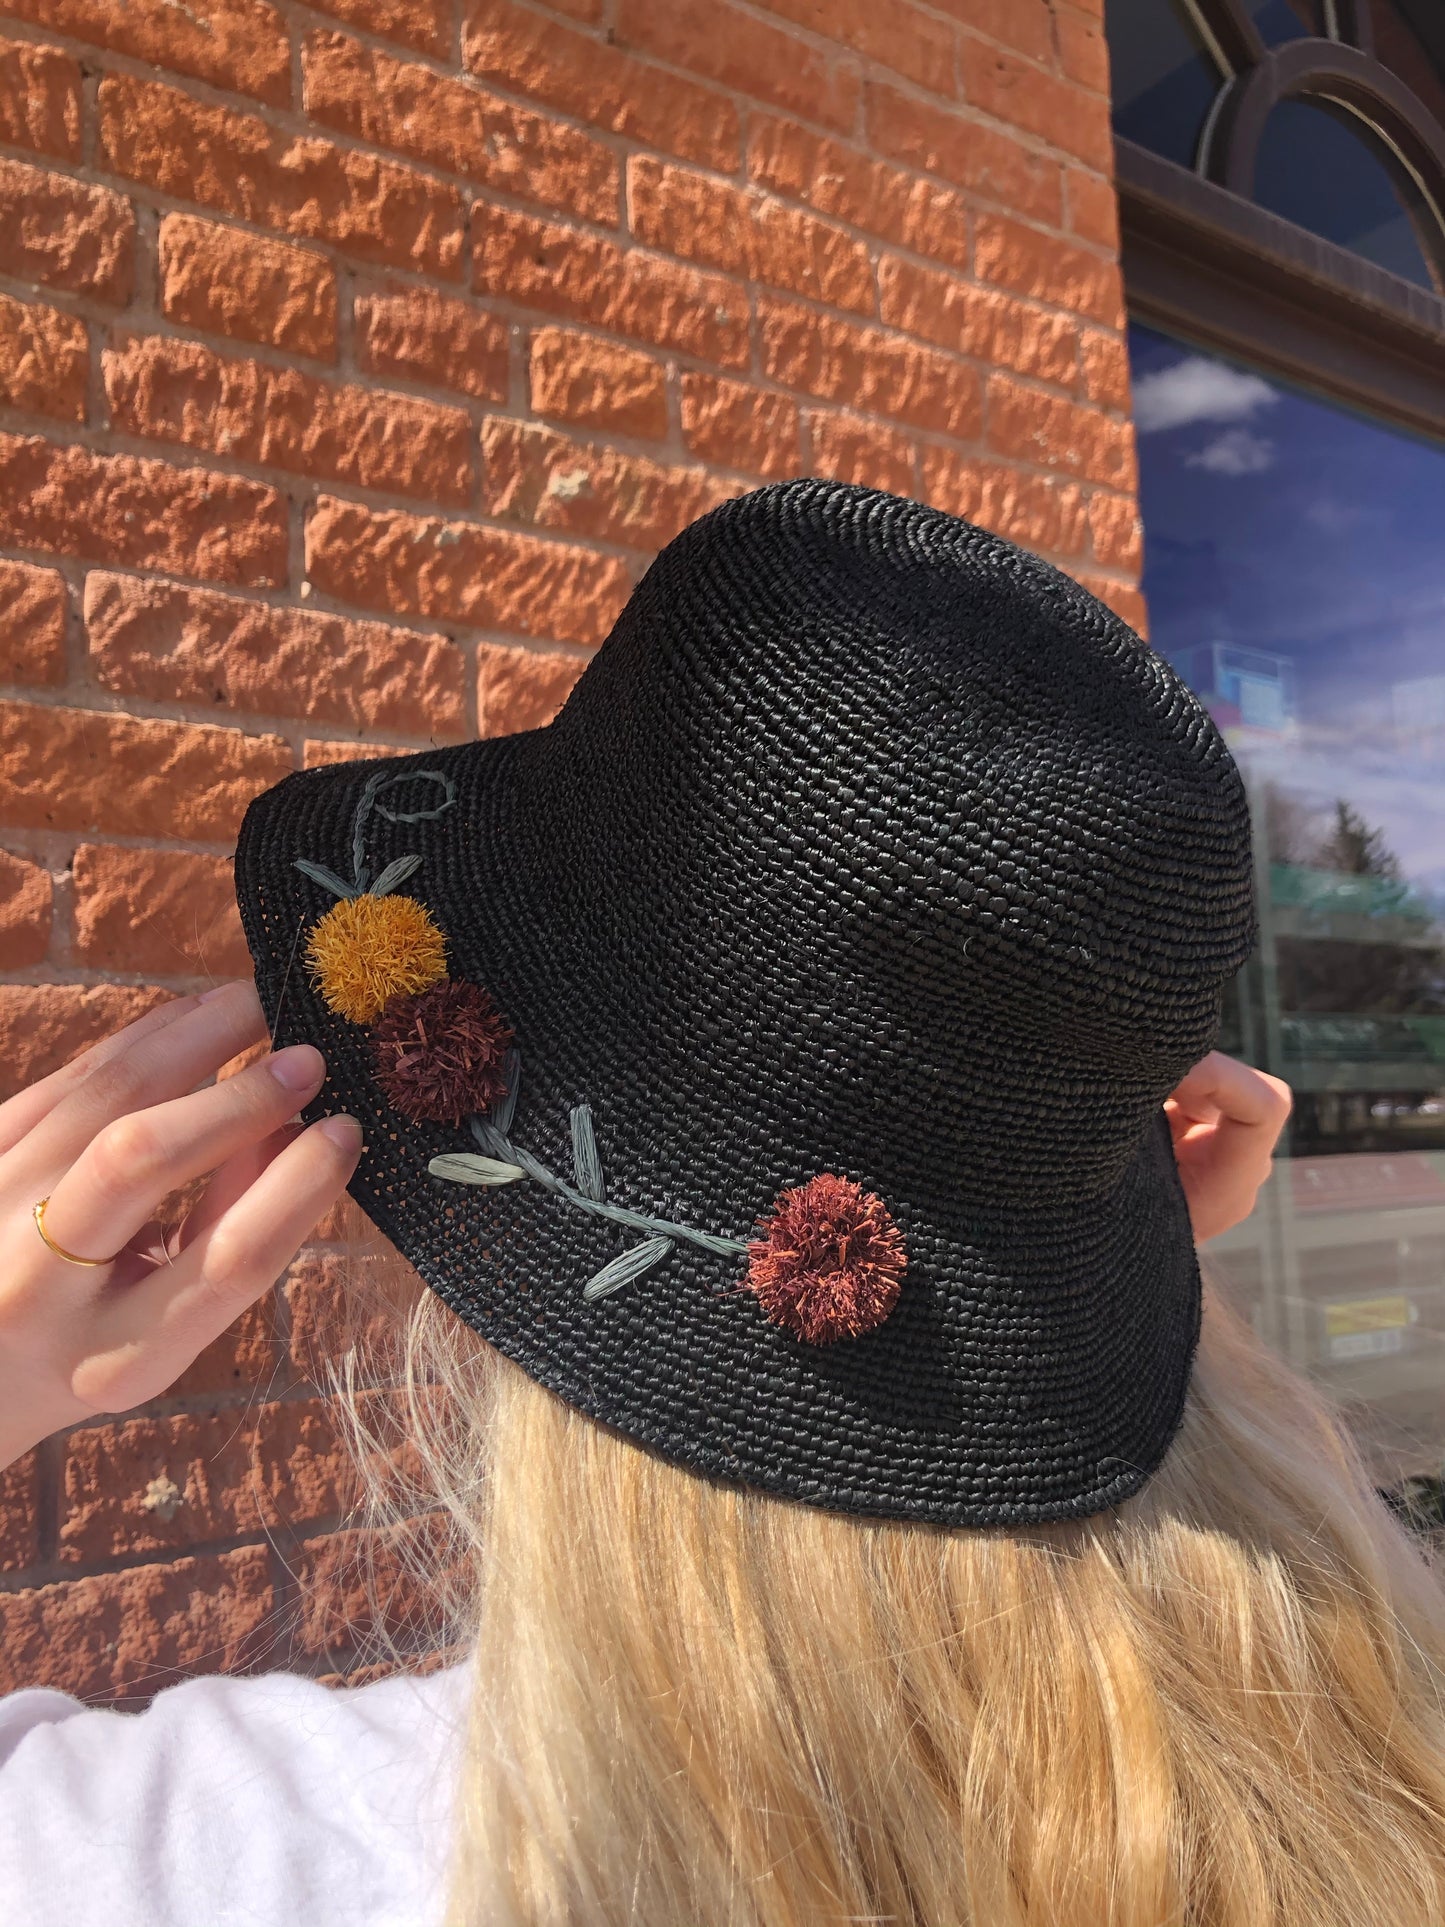 Straw Hat with Pom Pom Flowers